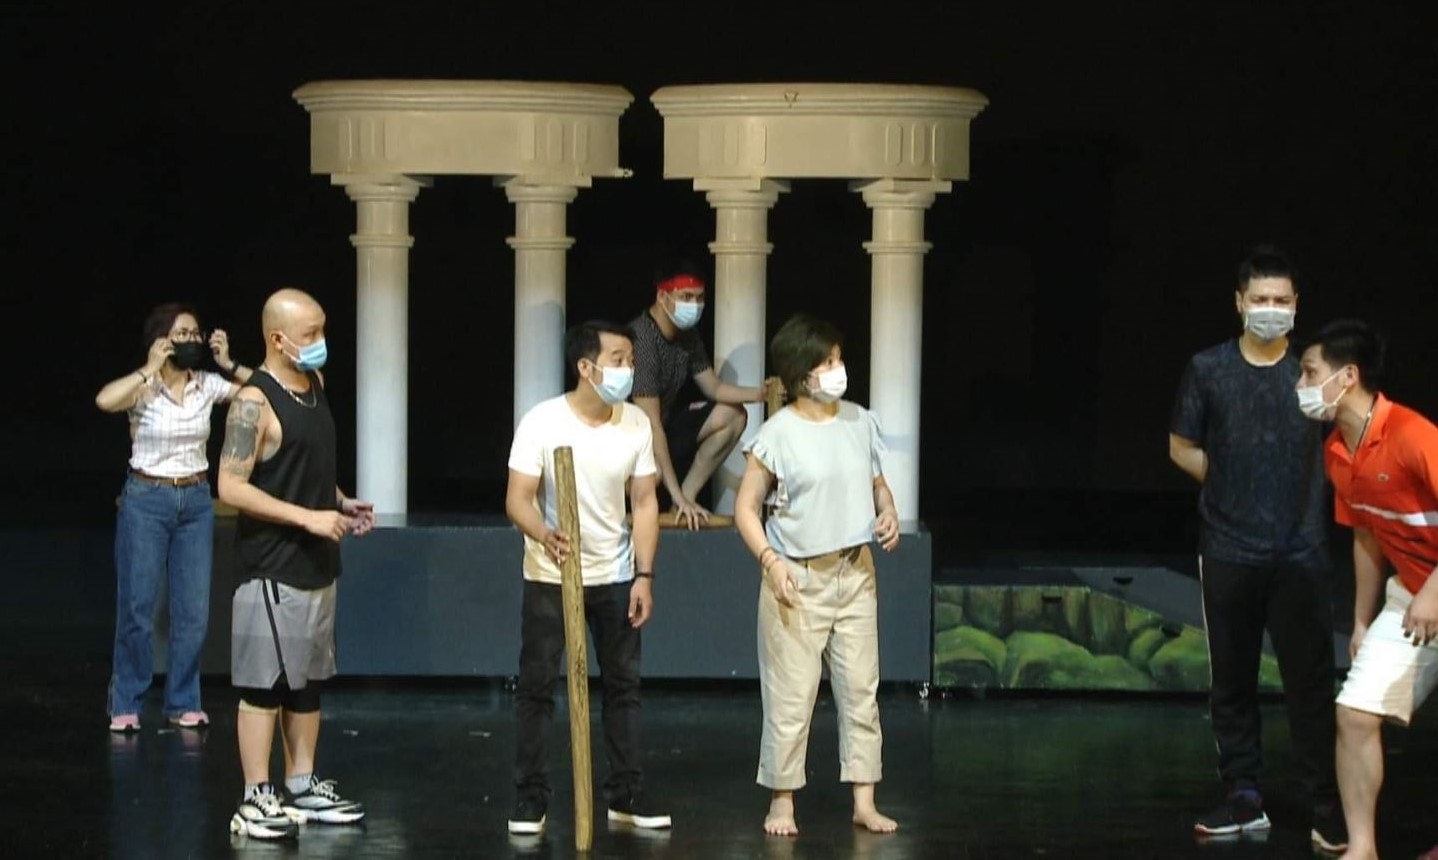 Các diễn viên Nhà hát Tuổi trẻ đang tập vở nhạc kịch “Cuộc chiến virus”.